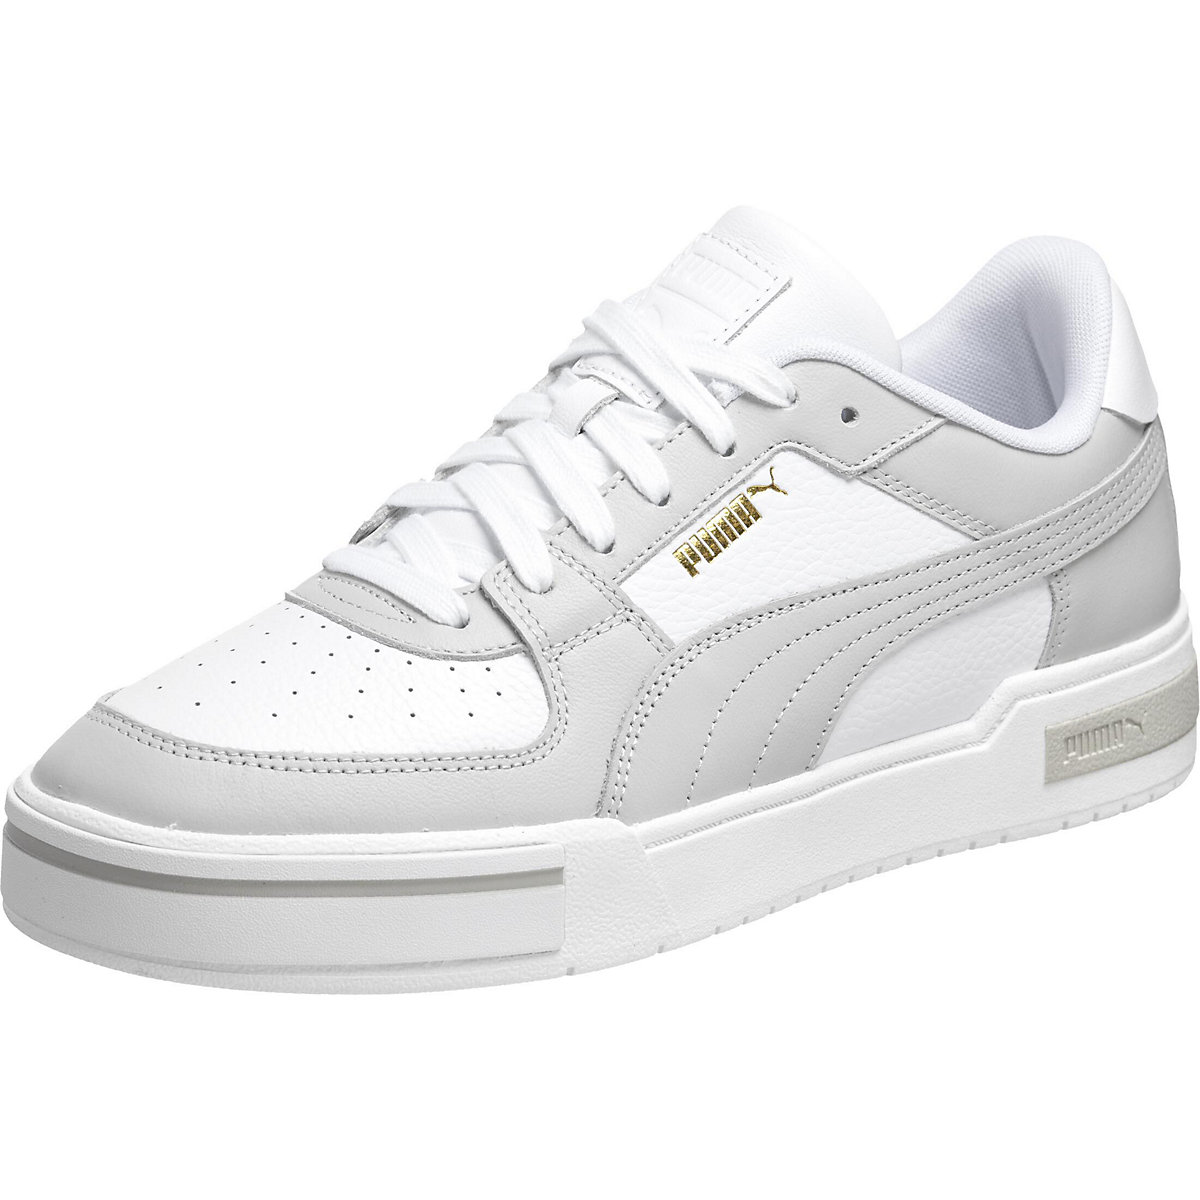 PUMA Puma Schuhe CA Pro Classic Sneakers Low weiß/grau